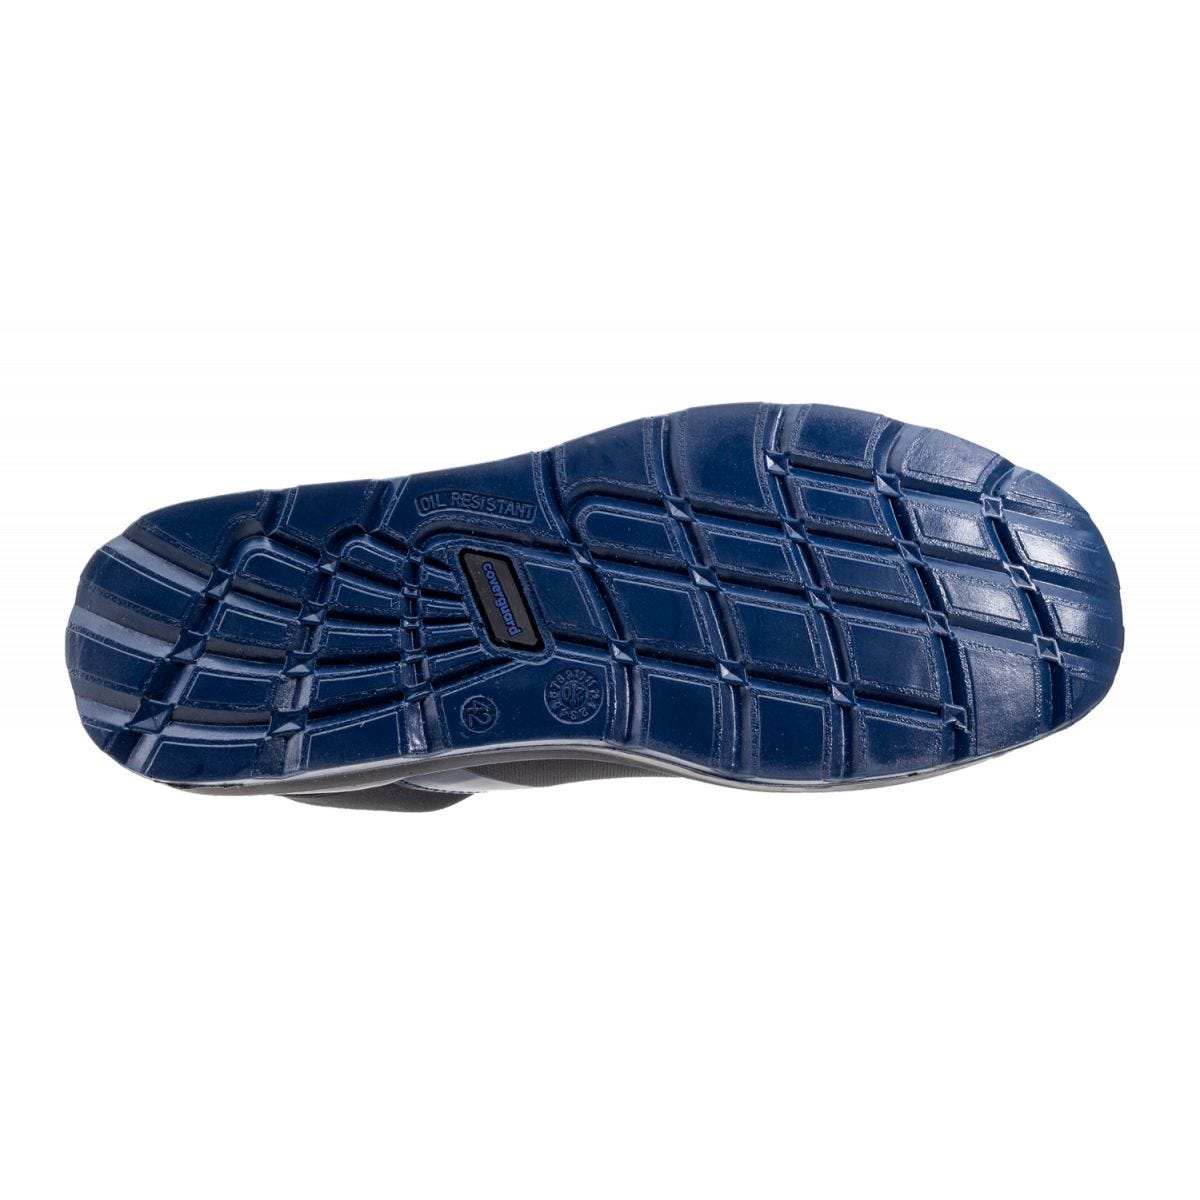 Chaussures de sécurité S1P PARAIBA Basse Noir Bleu - COVERGUARD - Taille 42 1